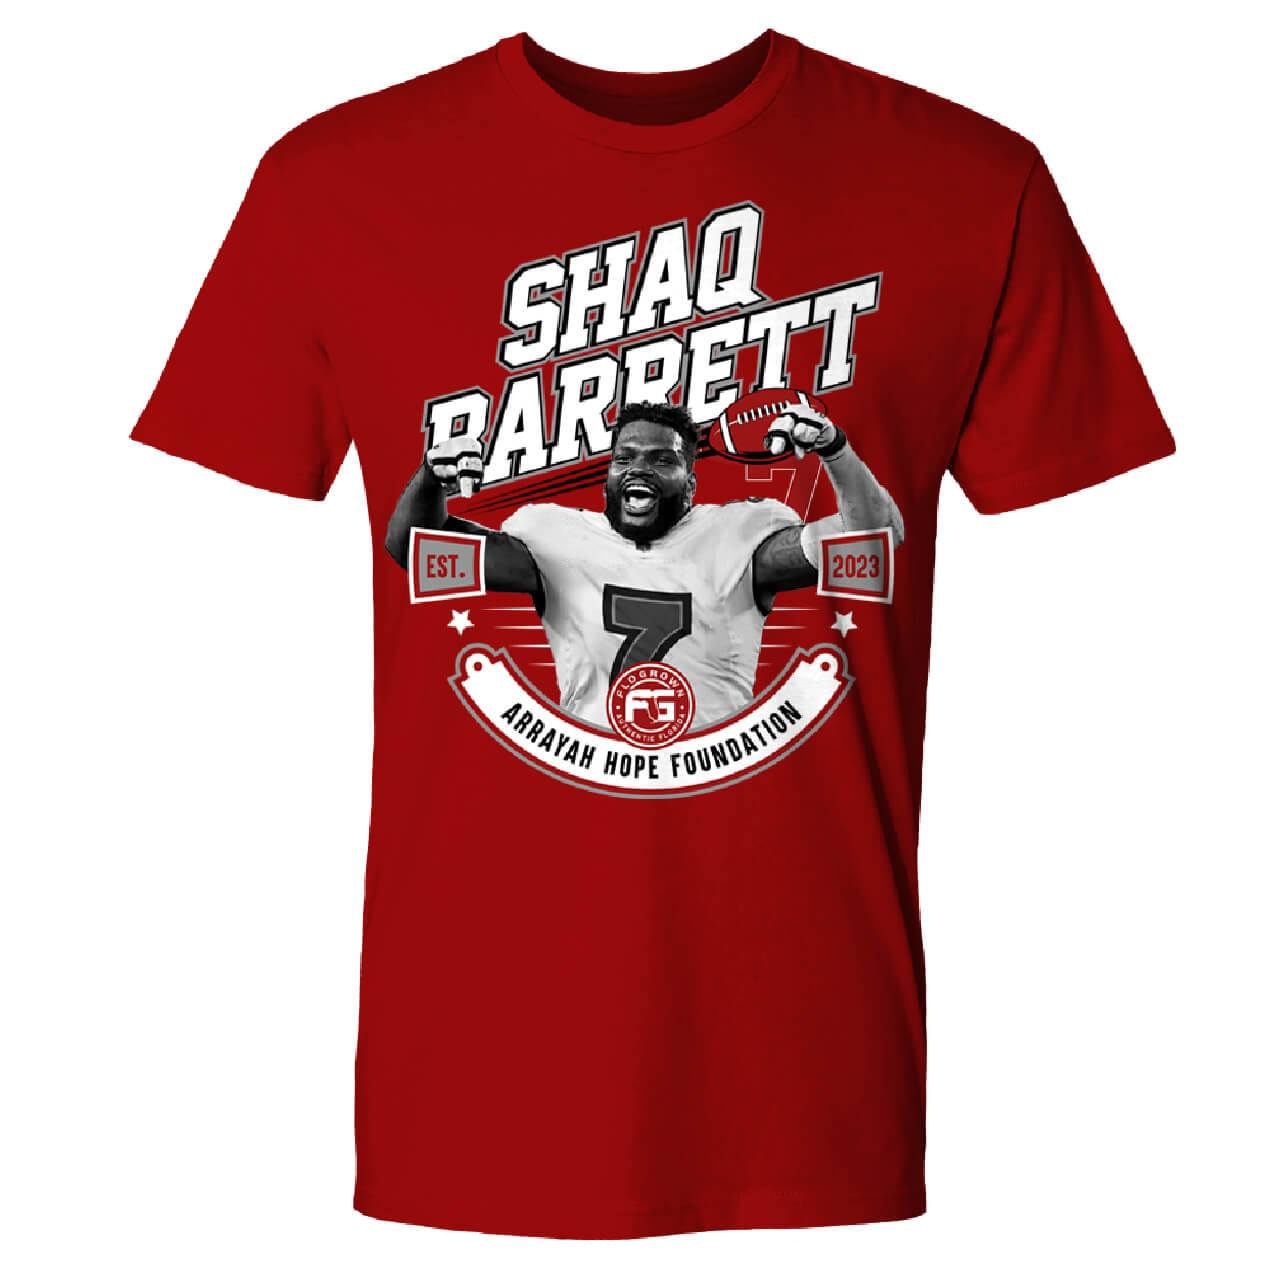 Shaq Barrett Charity Tee